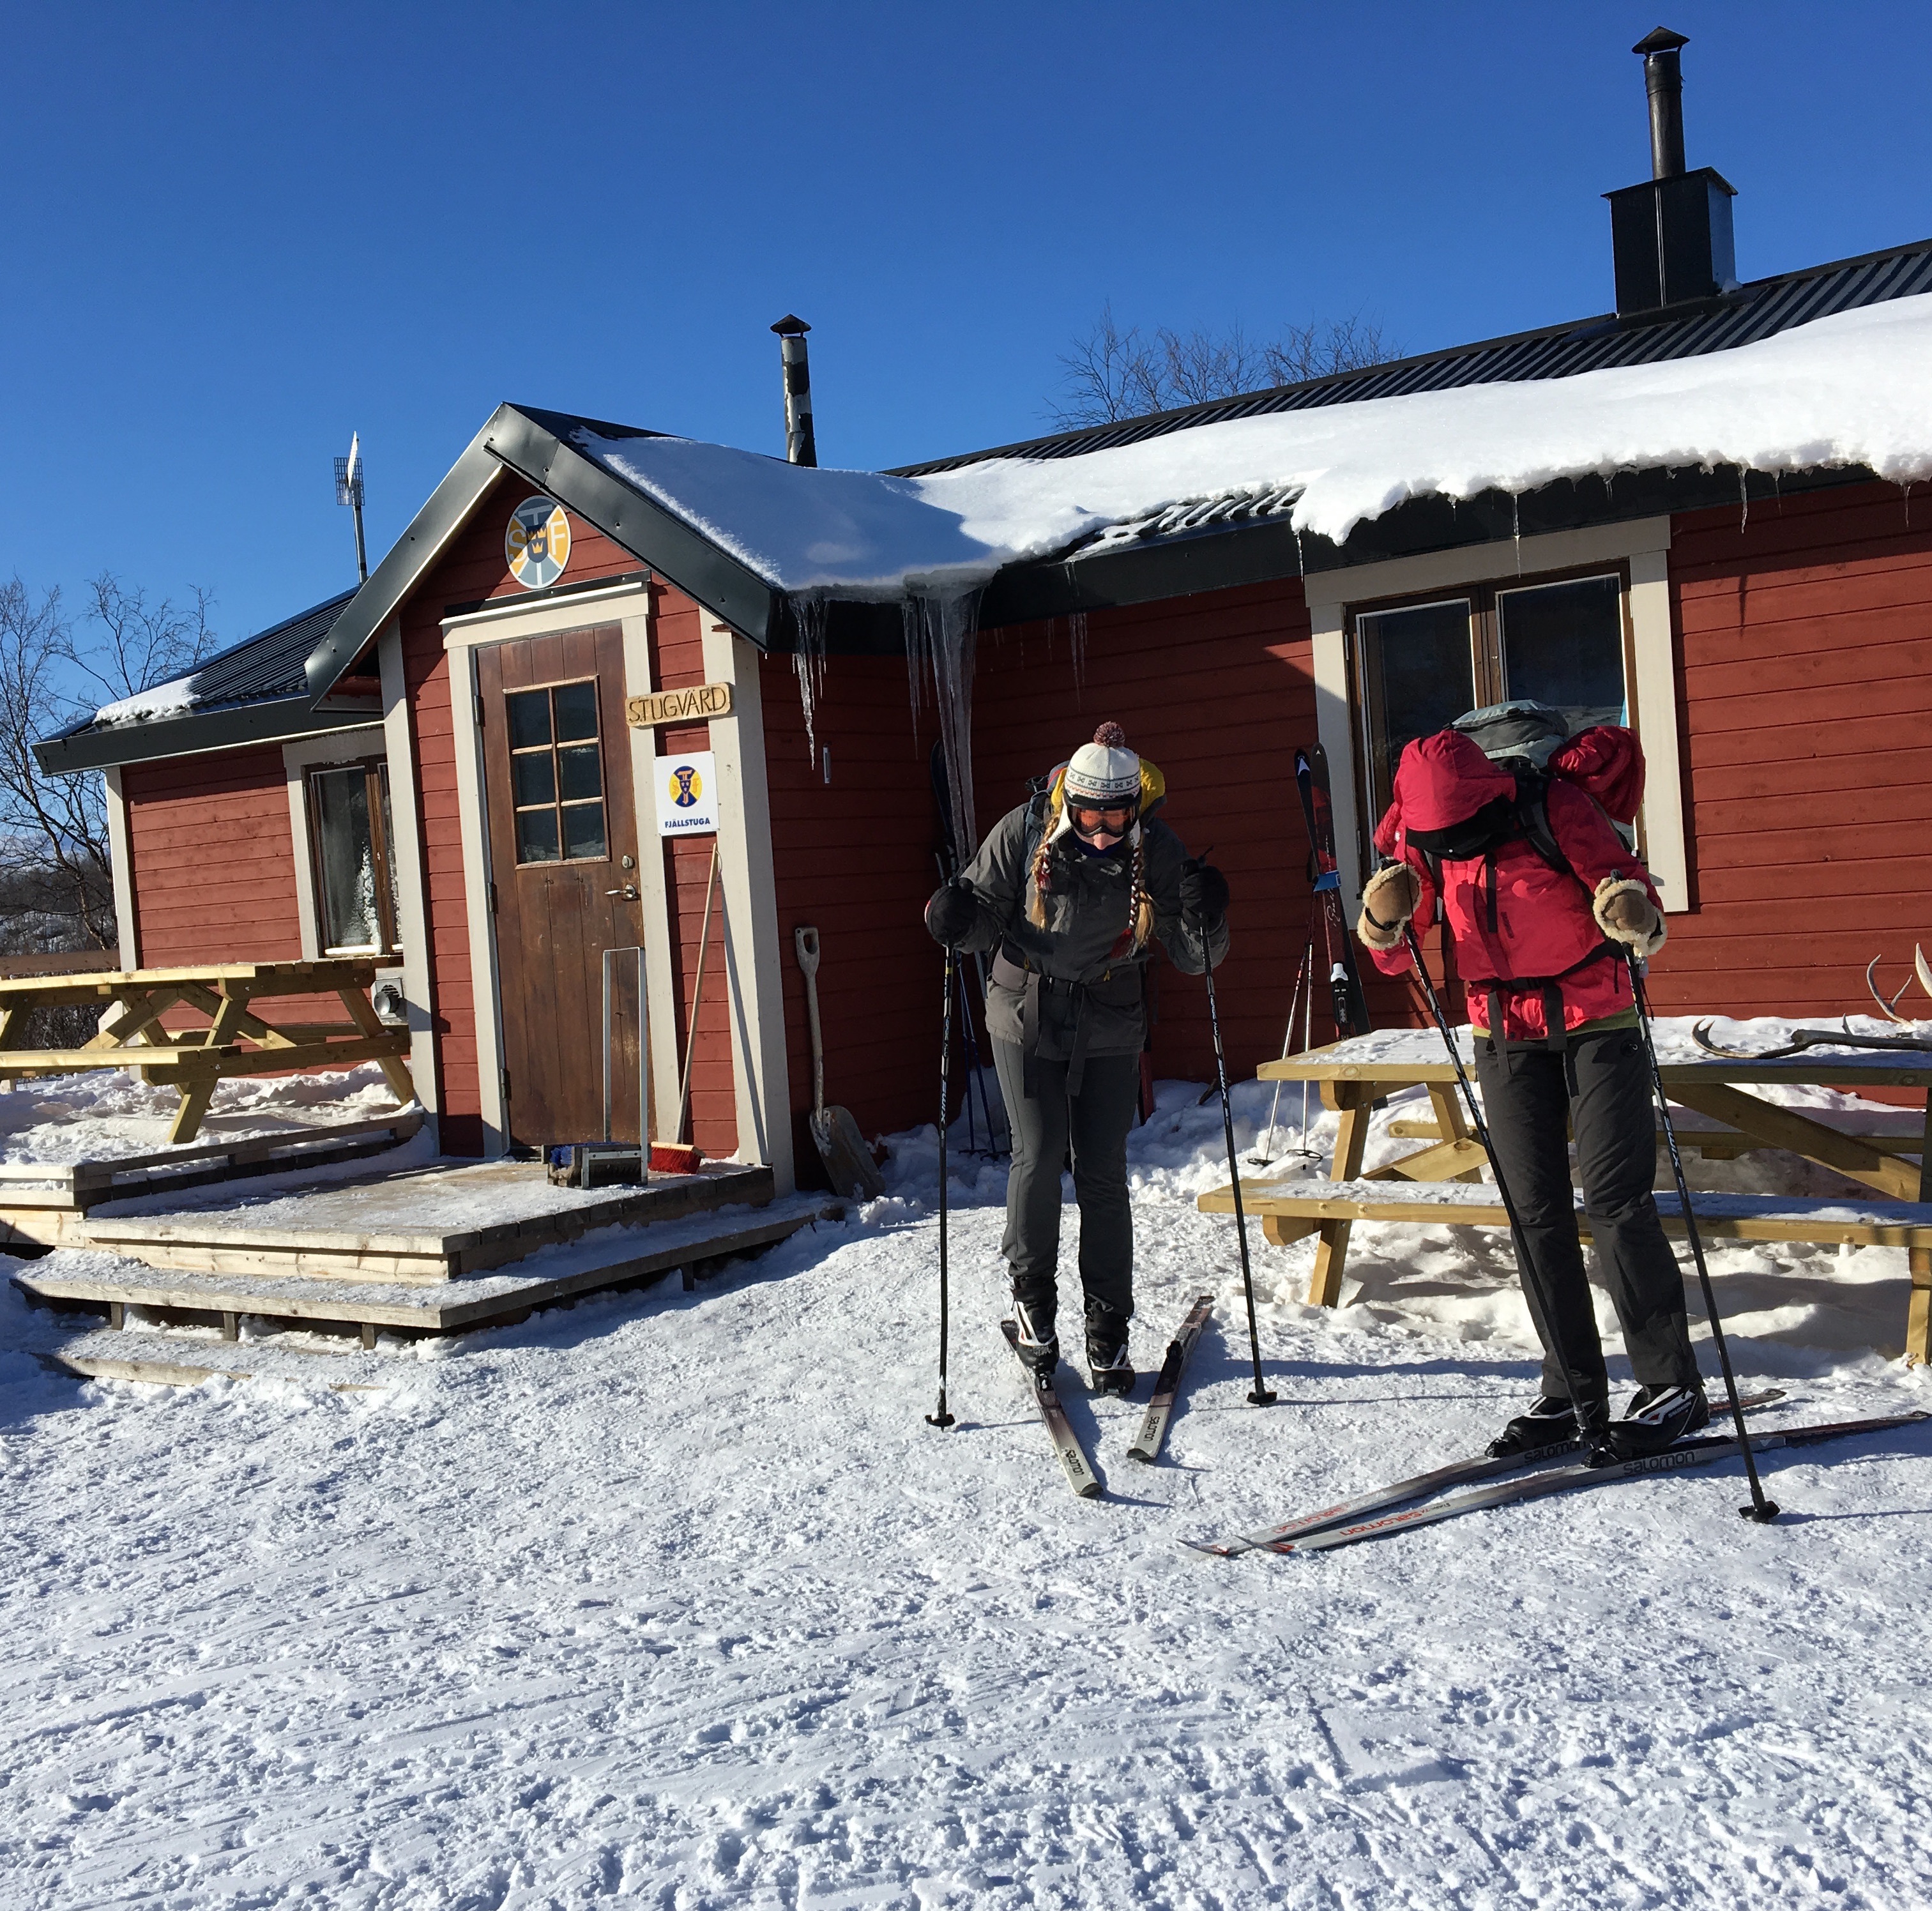 Putting on skis outside Abiskojaure hut